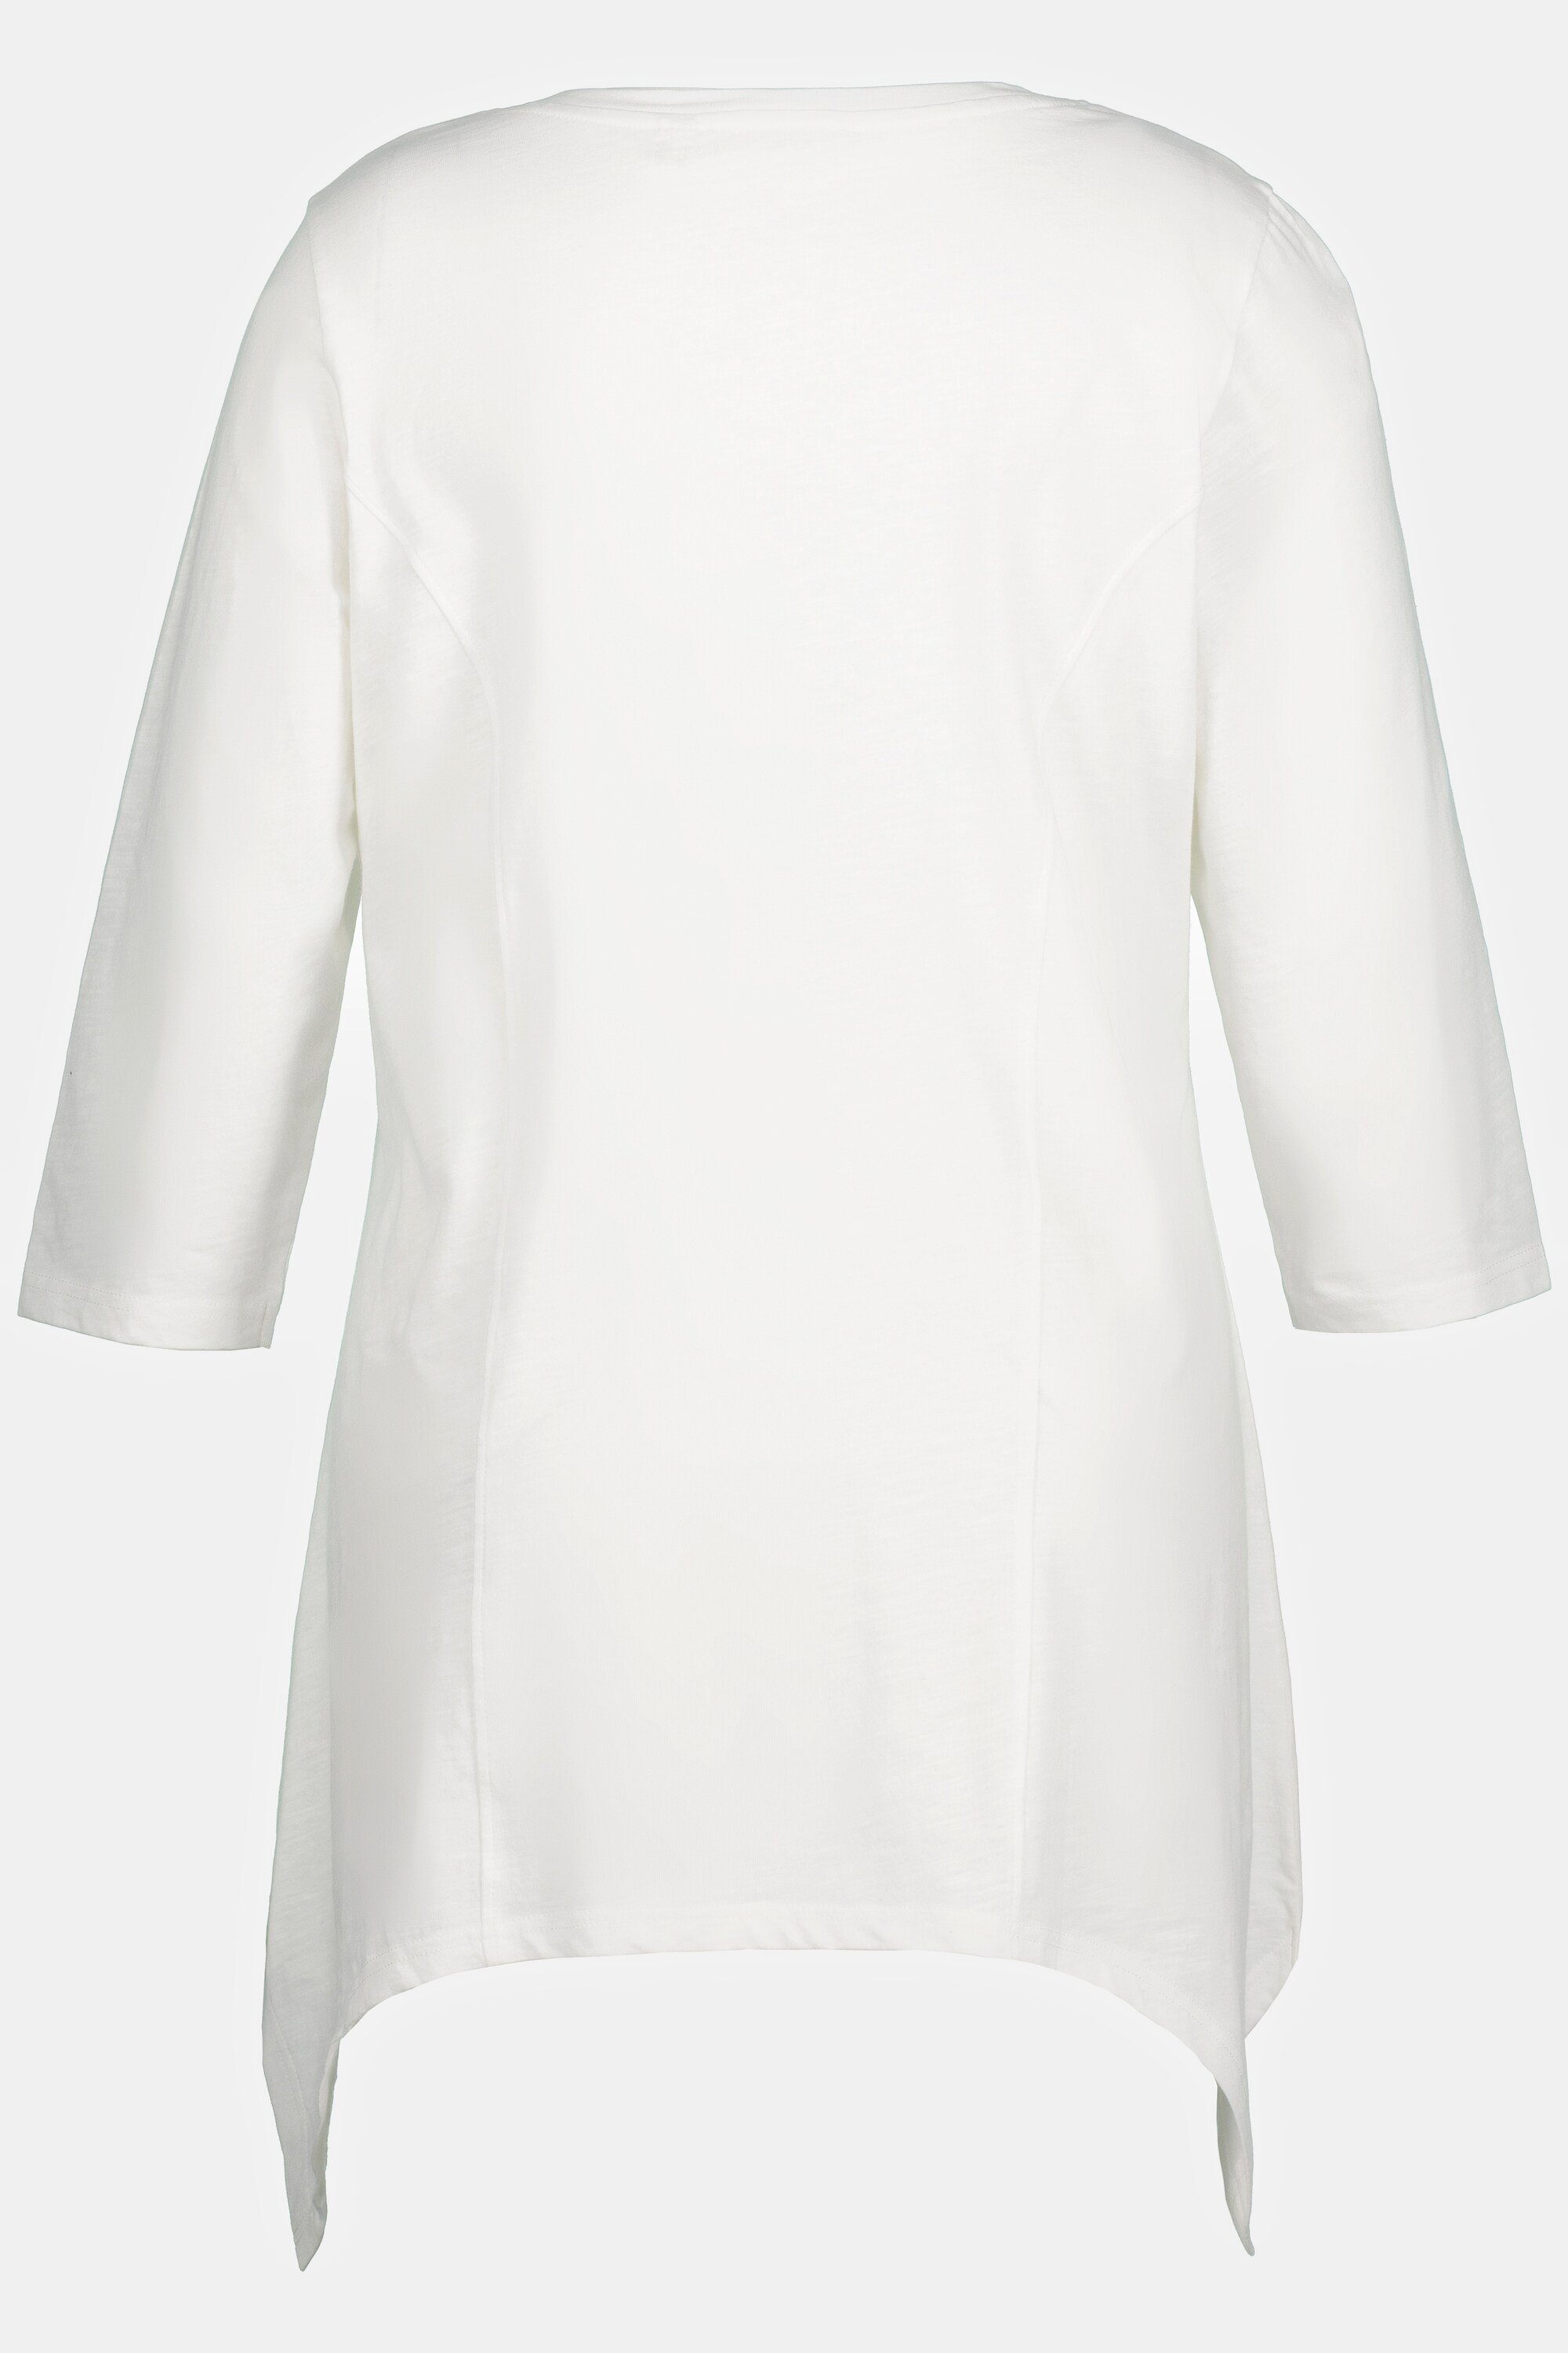 Zipfelsaum Biobaumwolle Shirt V-Ausschnitt Rundhalsshirt Ulla 3/4-Arm offwhite Popken